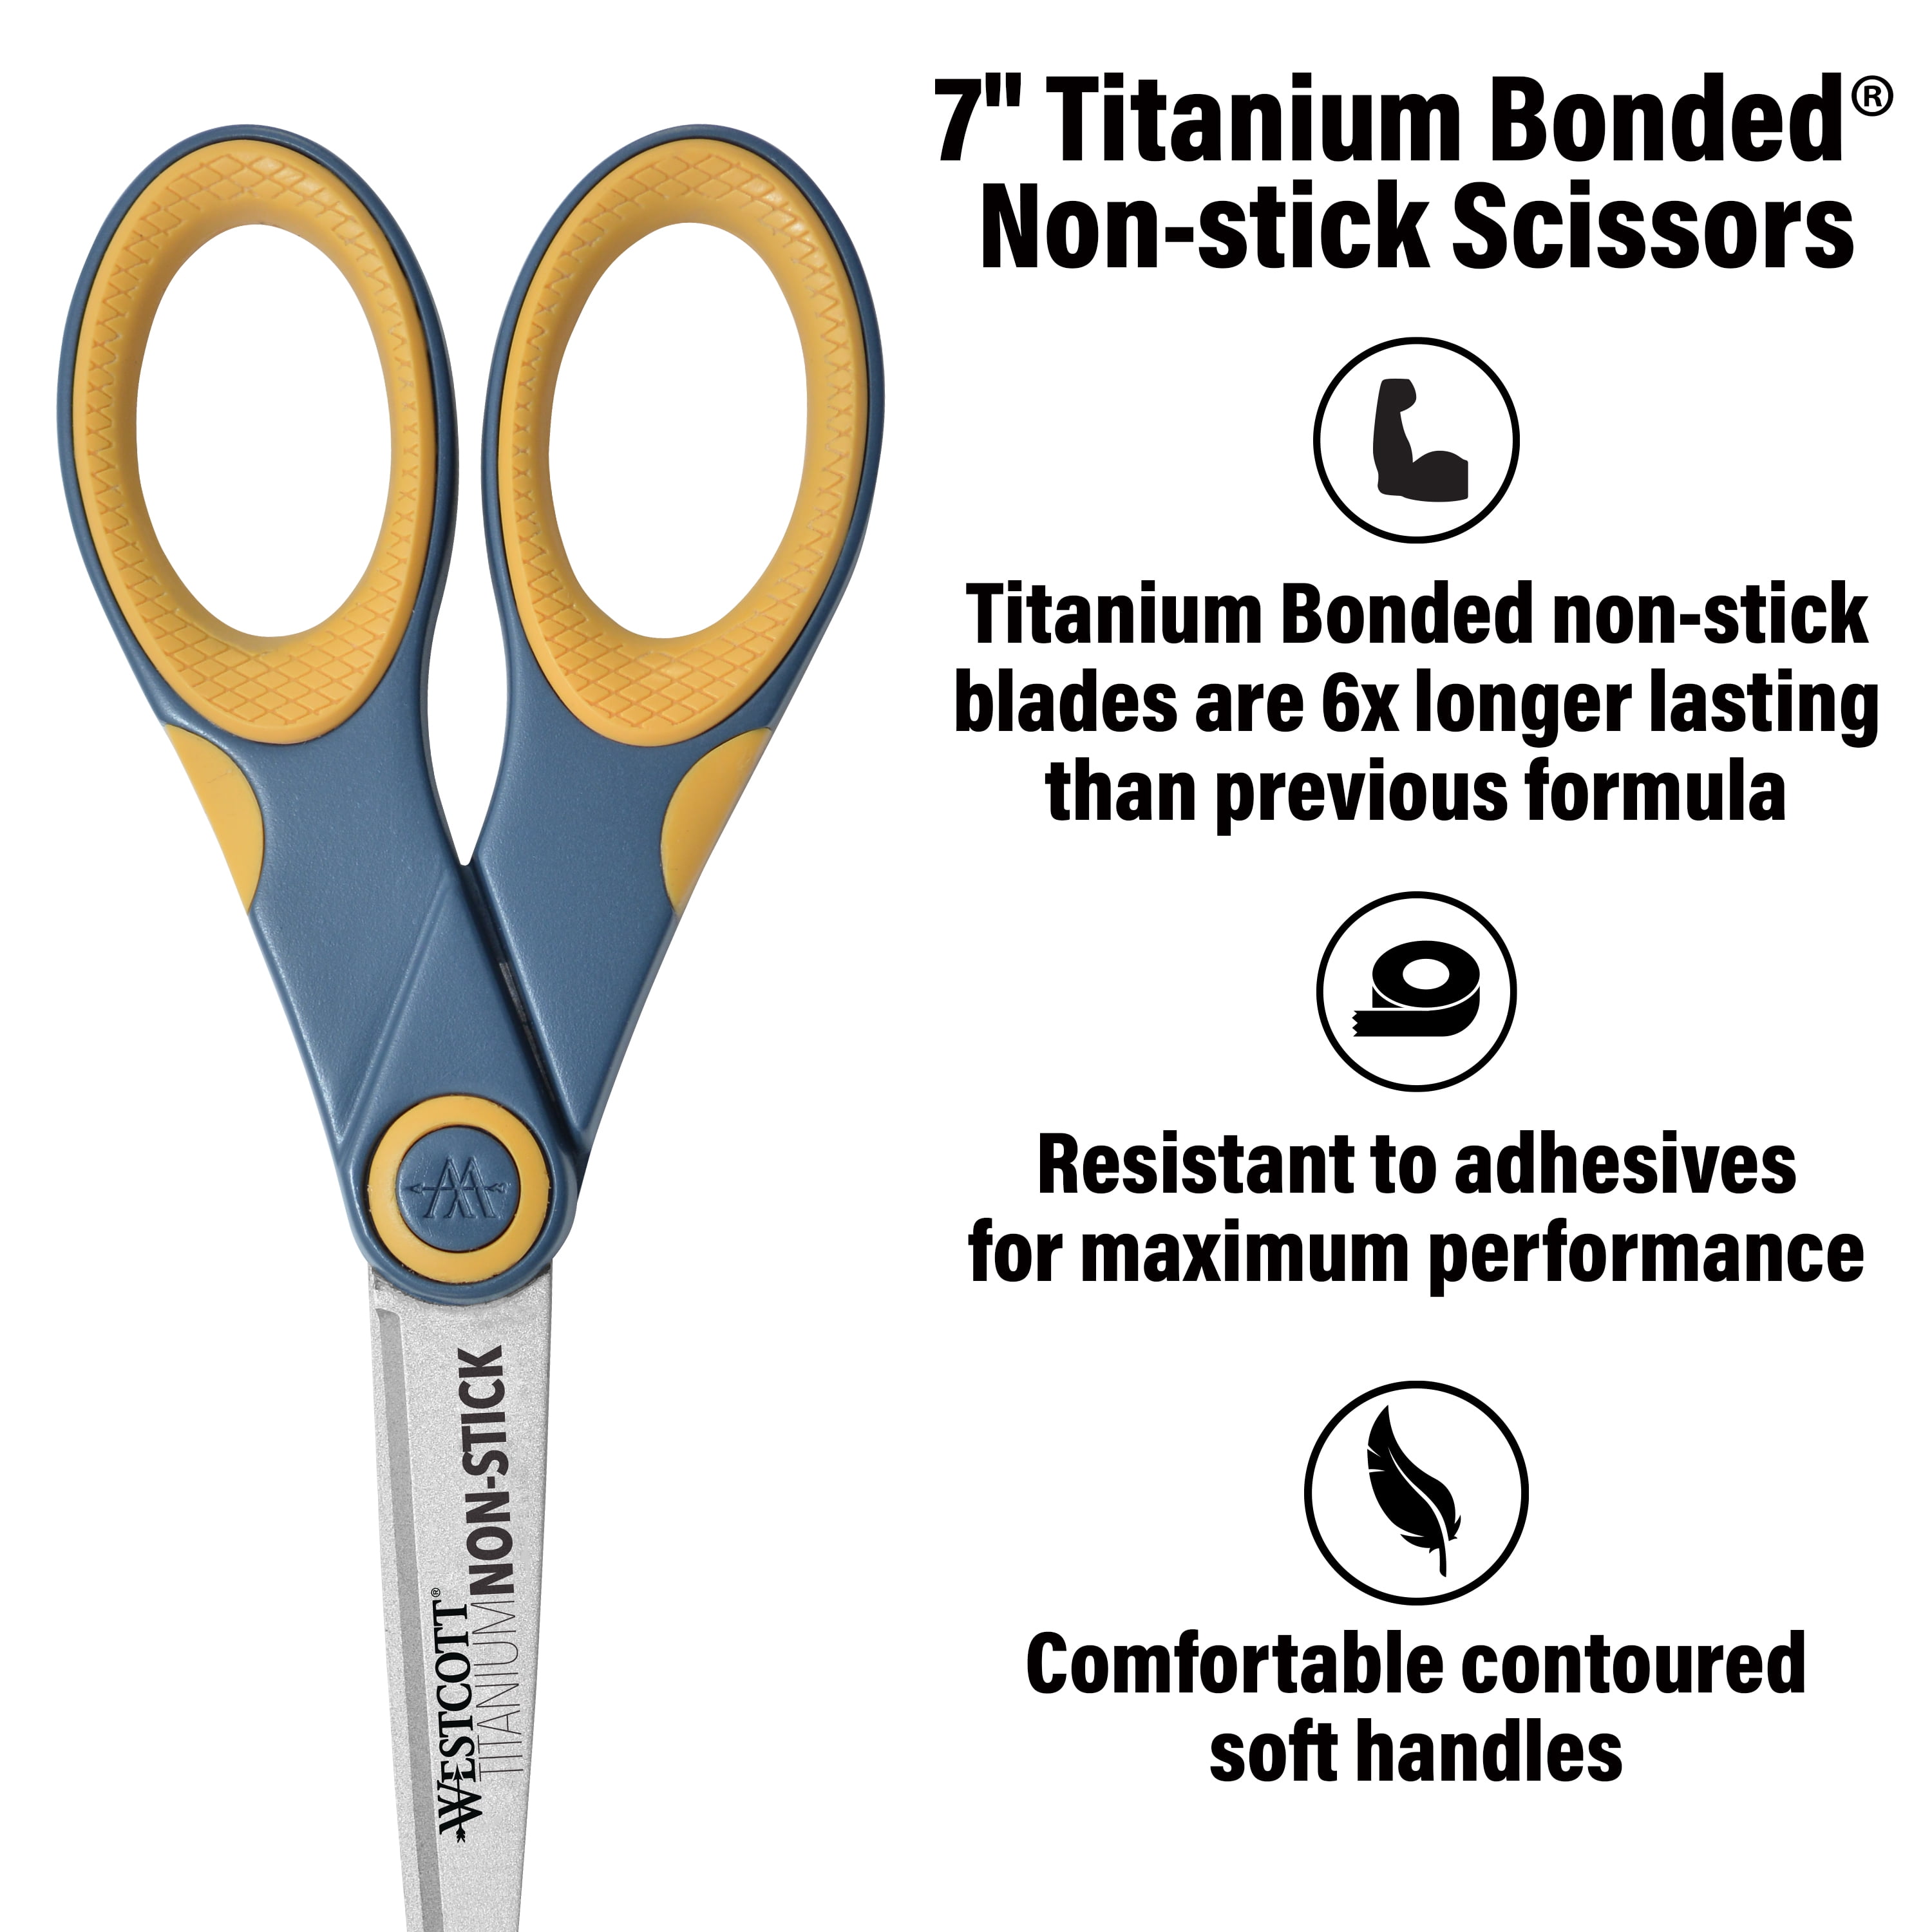 Westcott Titanium Scissors Combo 5inches & 8inches 2 Pairs 